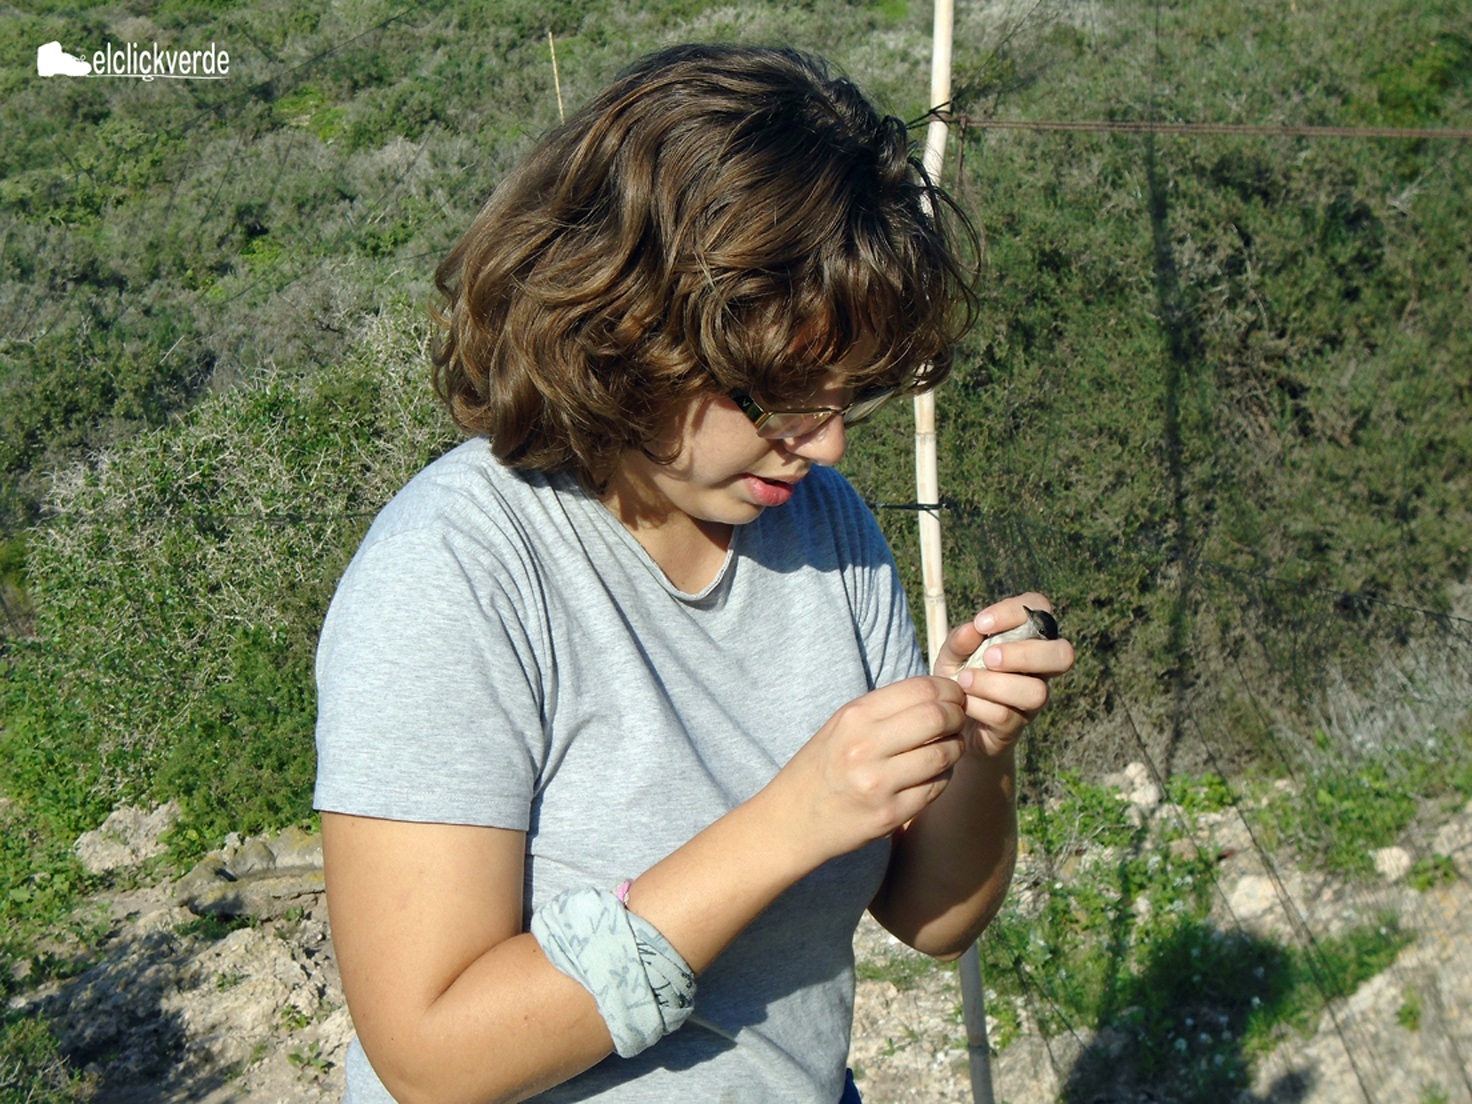 La voluntaria Ana Jara lee la anilla de un pájaro tras soltarlo de la red.